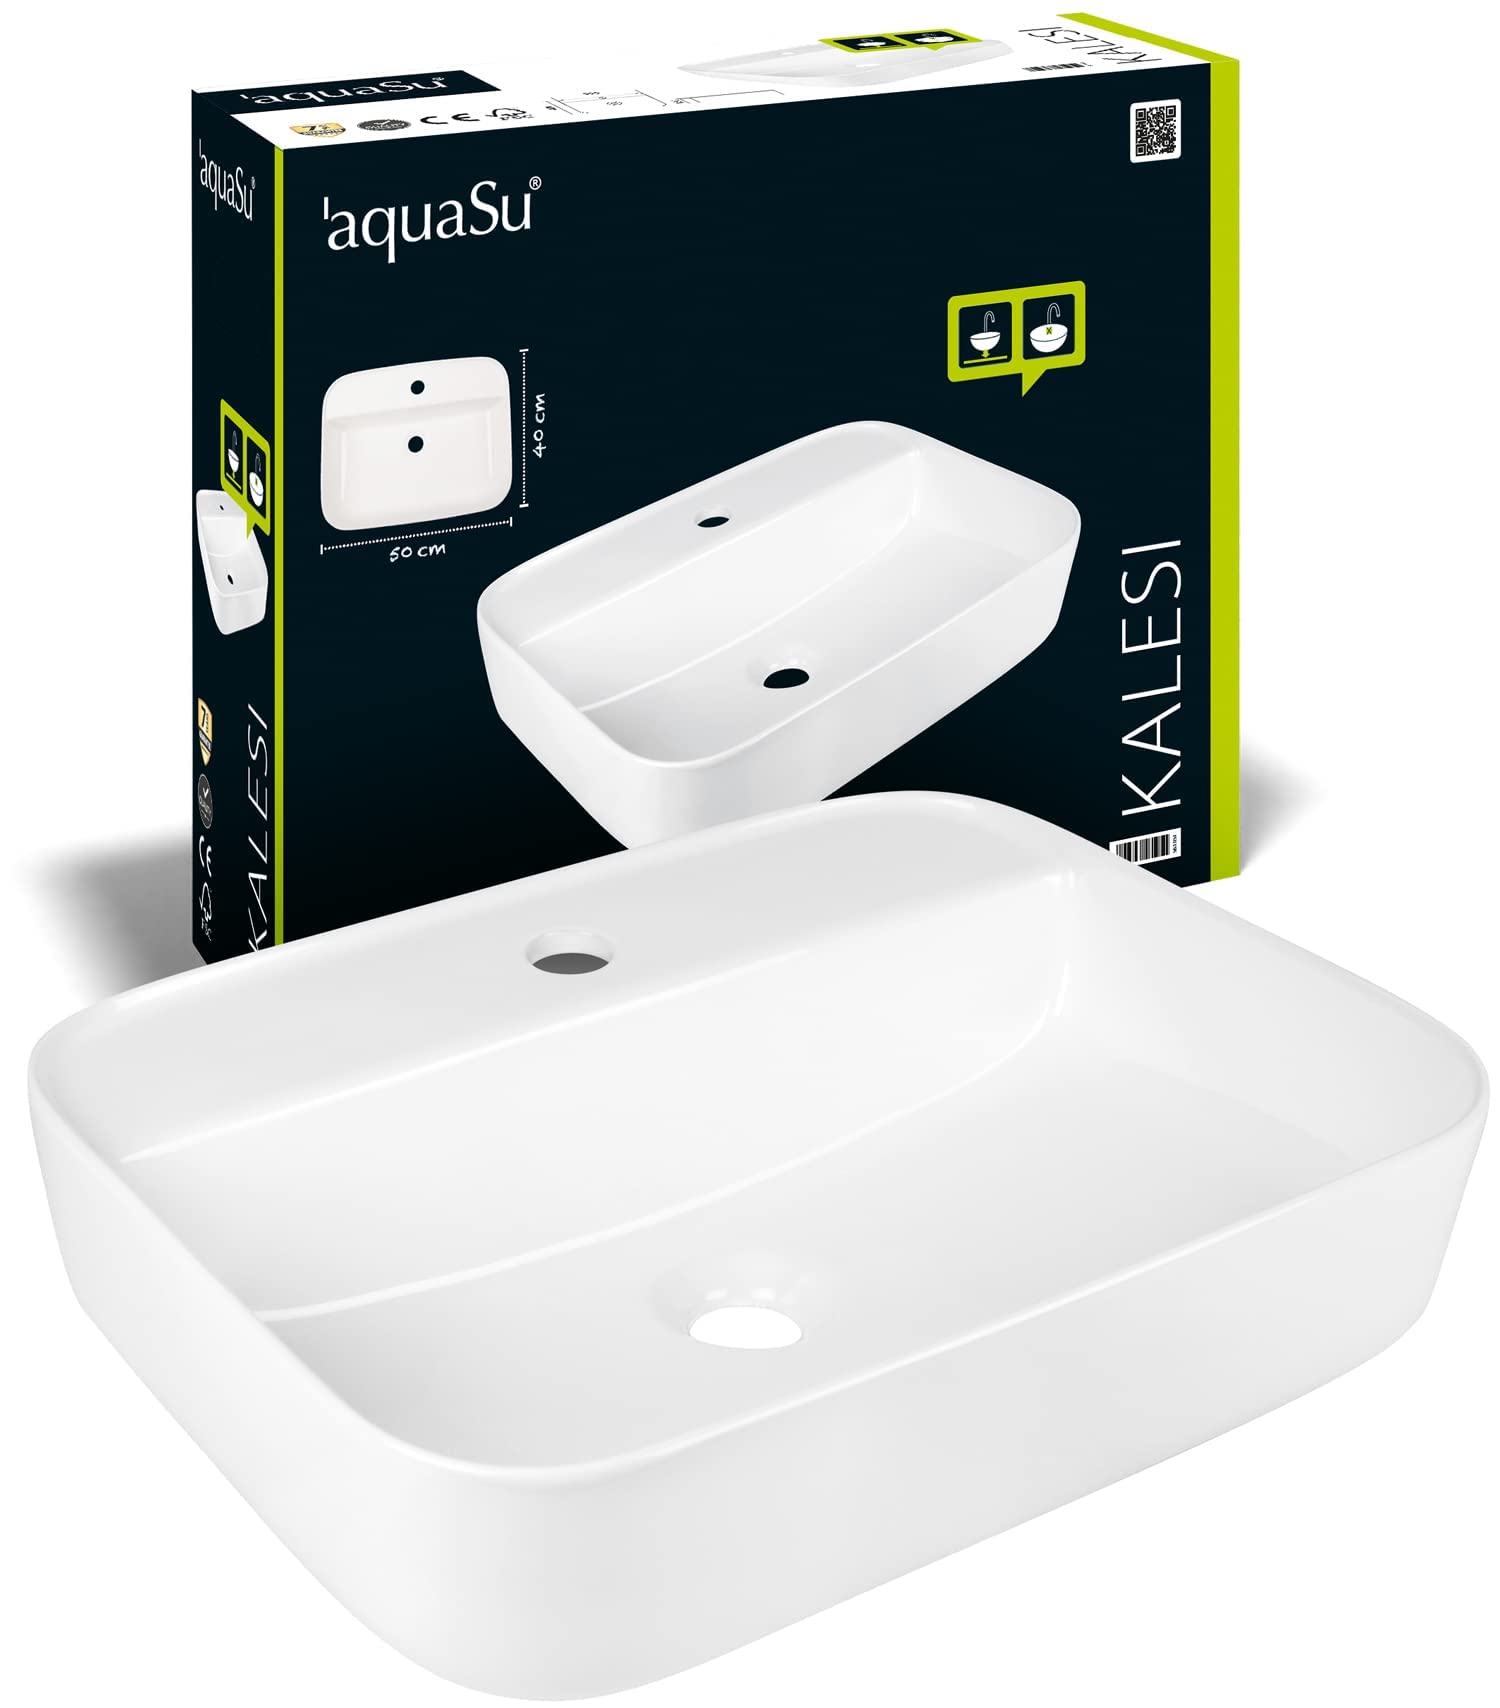 aquaSu® Waschtisch kaleSi 50 cm | ovaler Aufsatzwaschtisch in weiß | Waschbecken 50 x 40 cm zur Aufsatz-Montage | Höhe 13 cm | modernes Design | 56105 1